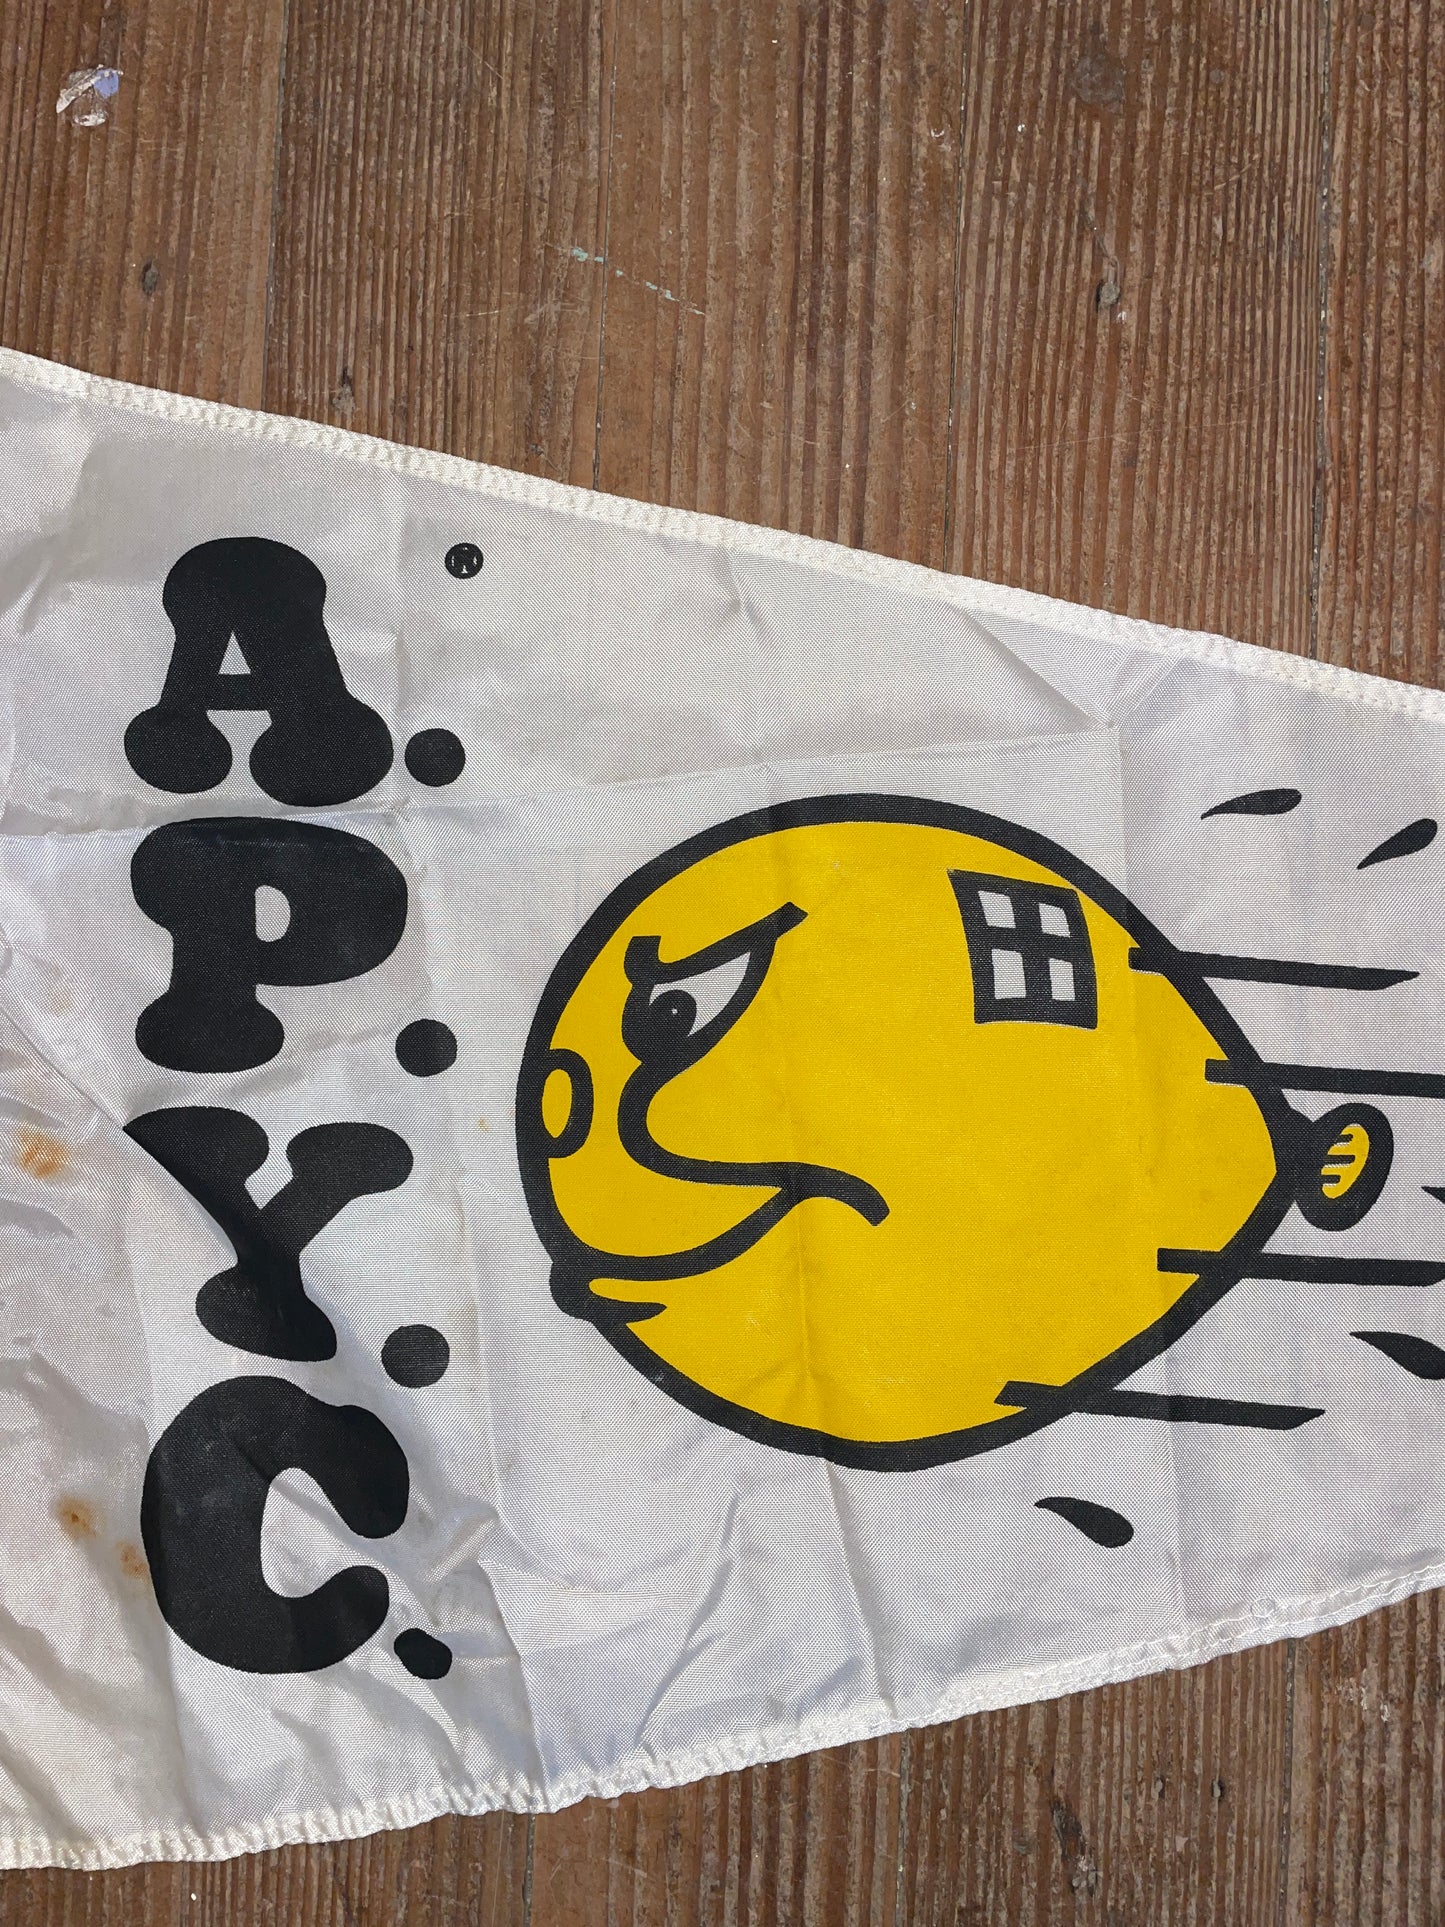 A.P.Y.C Flag